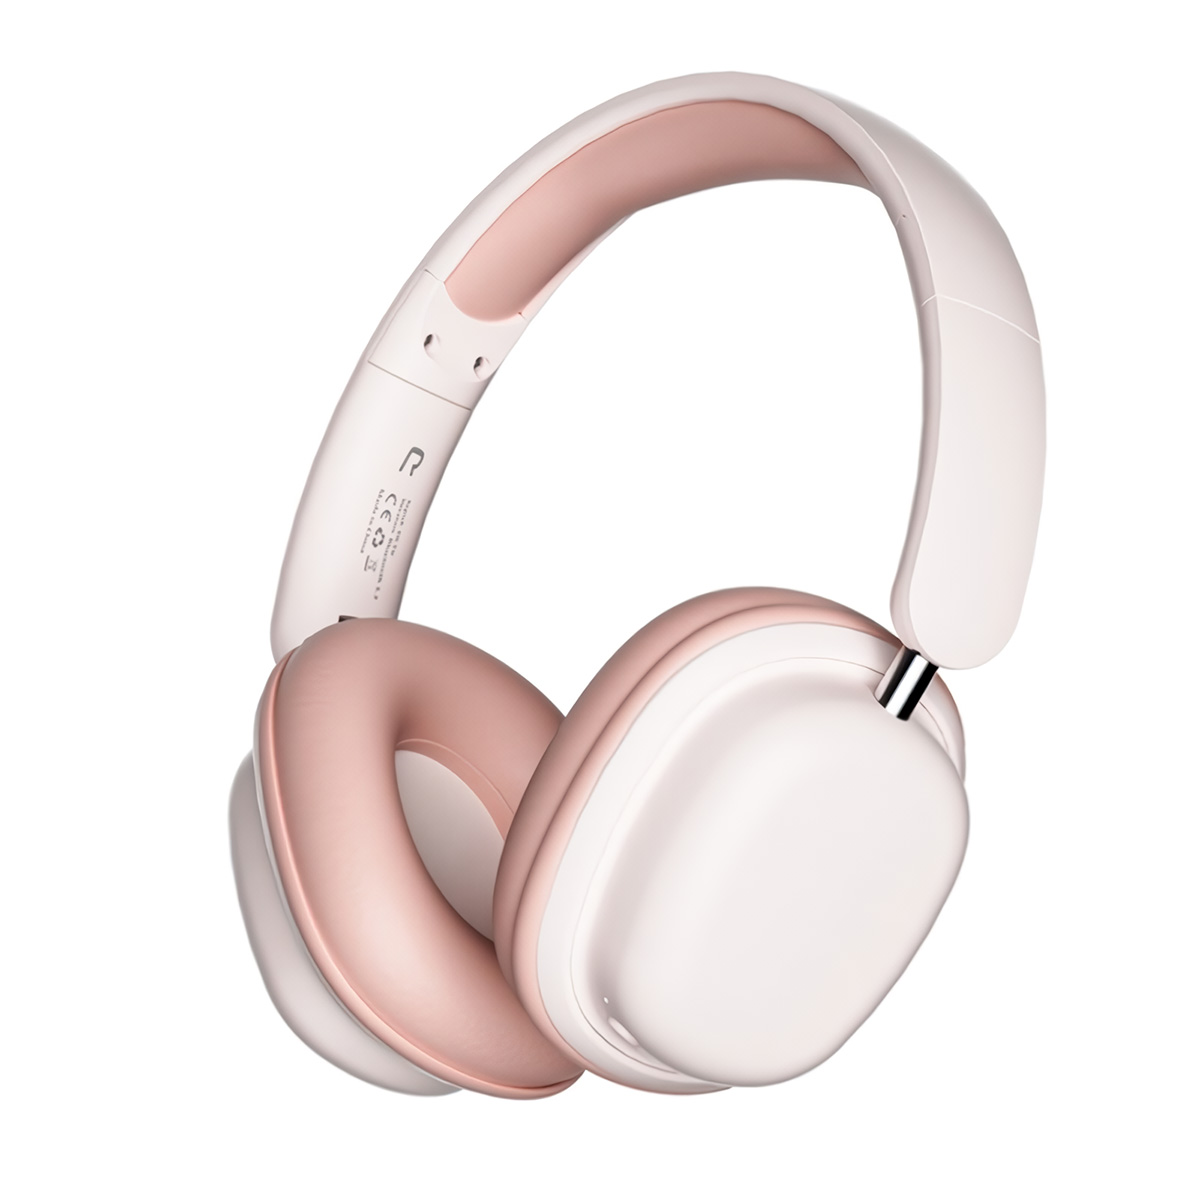 Auriculares Bluetooth Klack Sy-t1 Plegables Micrófono 20h De Autonomía - rosa - 